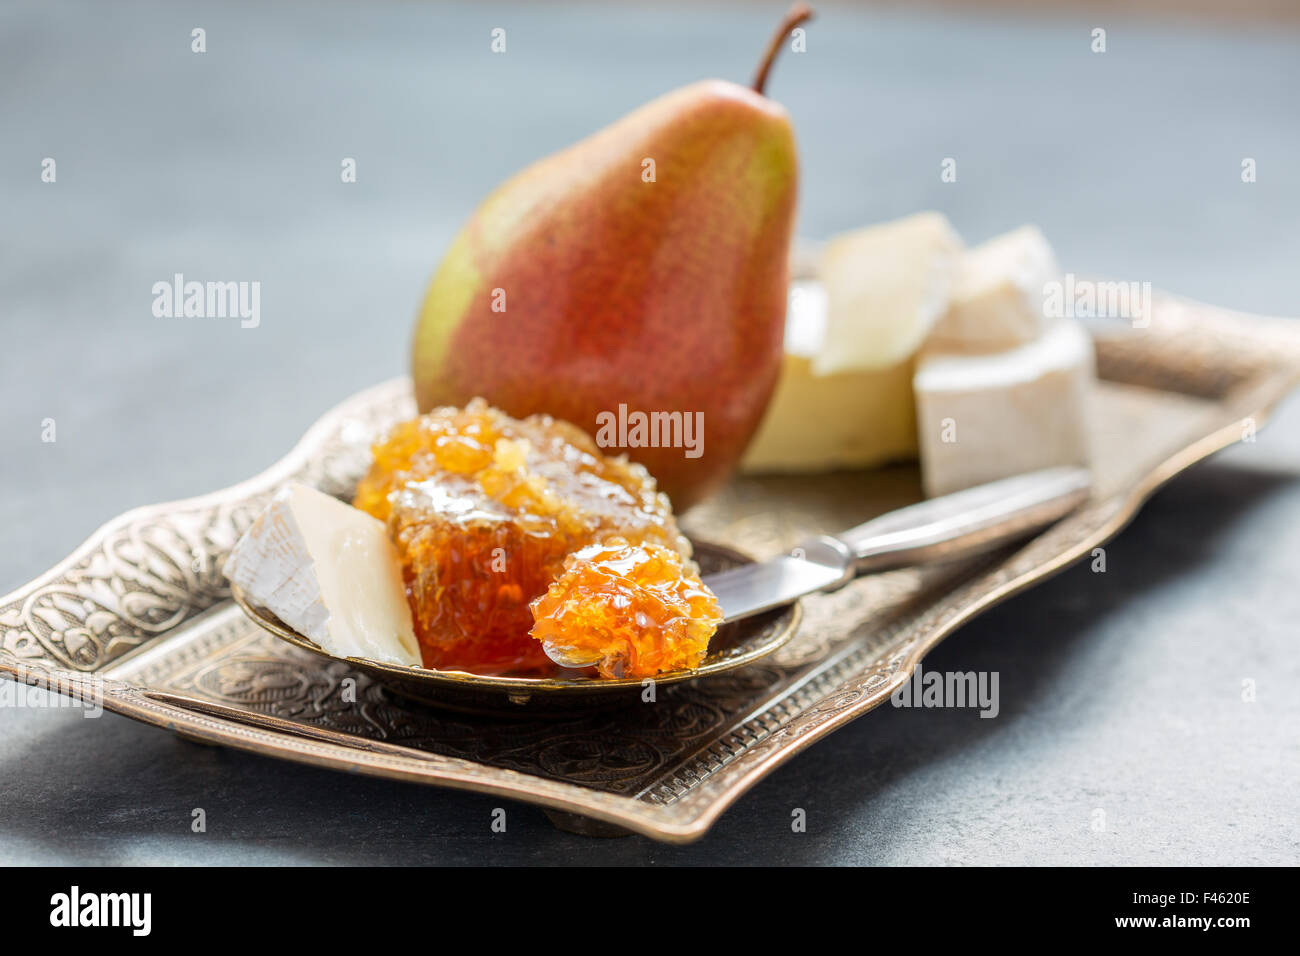 La miel, pera y queso brie. Foto de stock